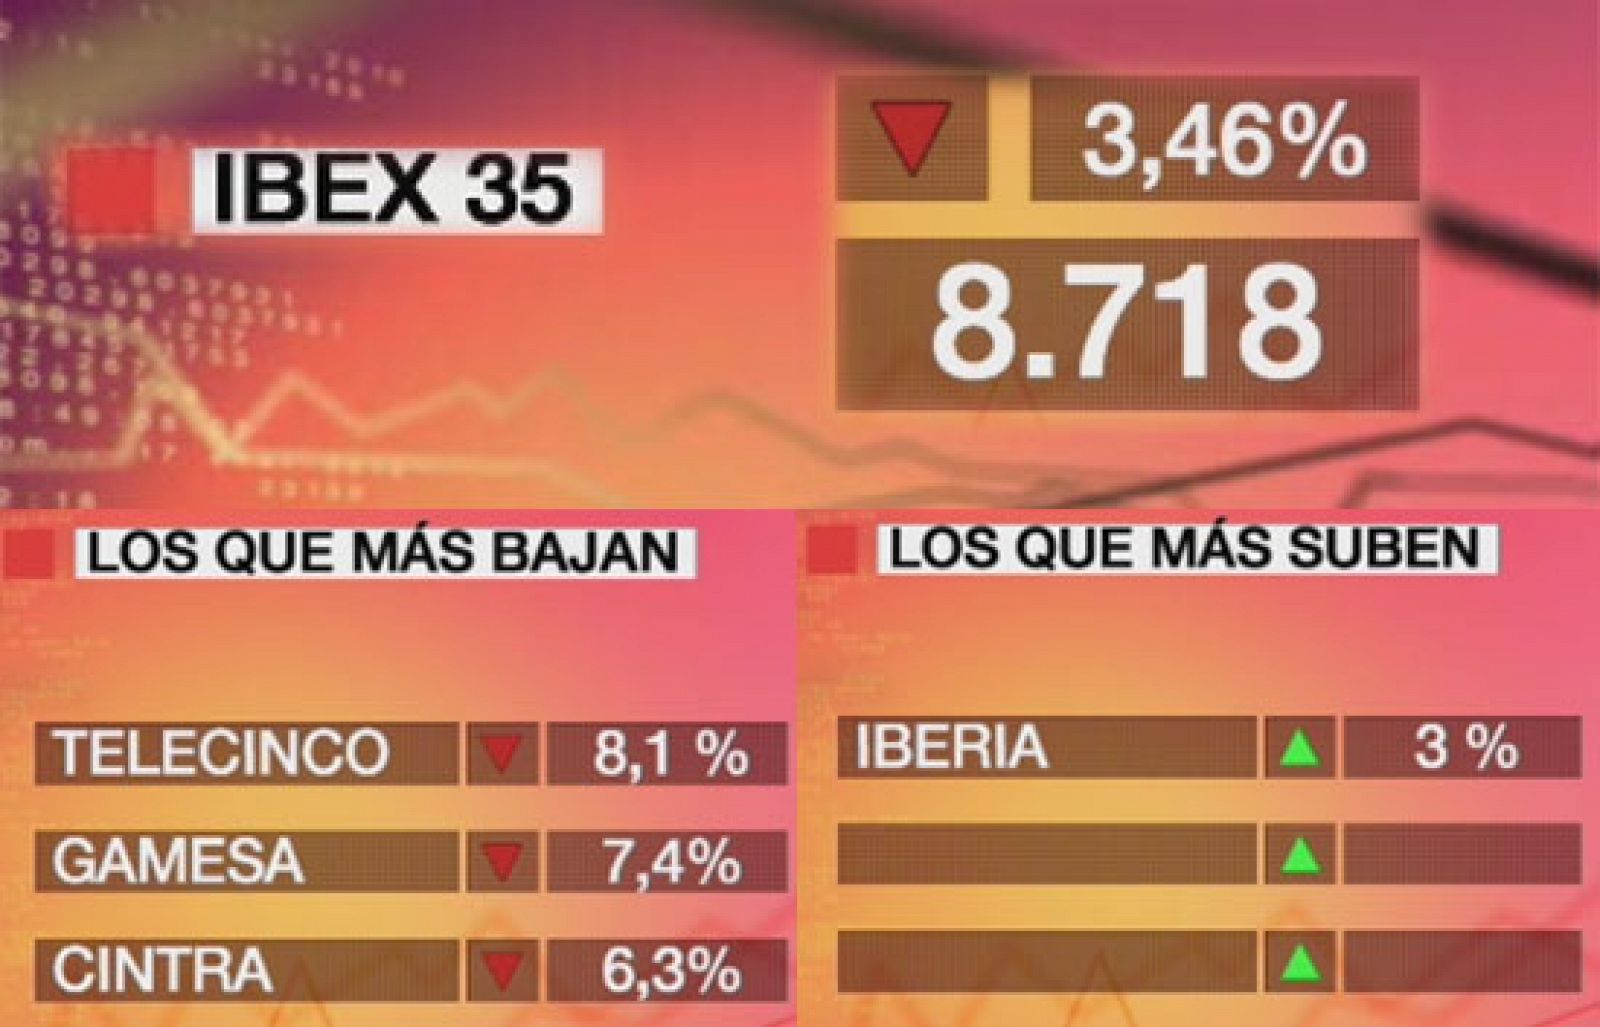 Economía 24H - El Ibex 35 baja el 3,46% y cierra en los 8.718 puntos